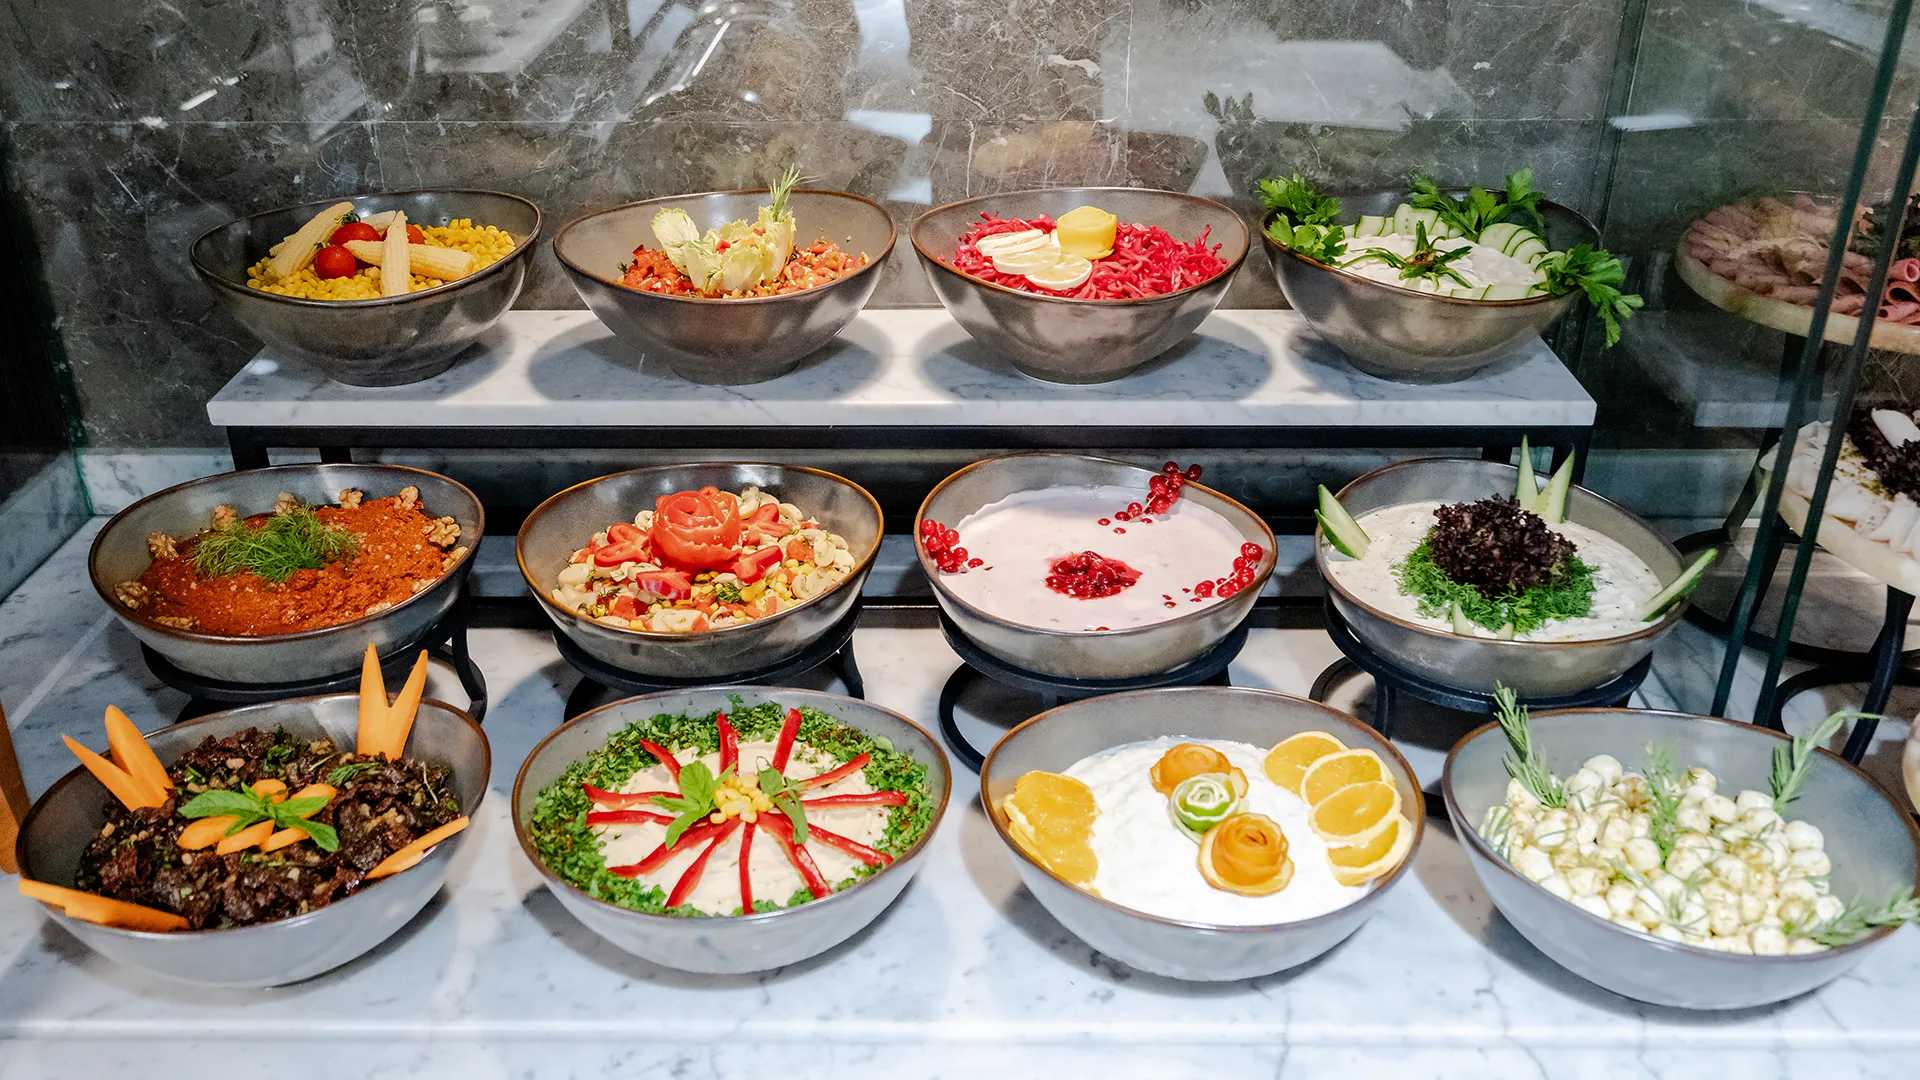 Forskellige skåle med mad er udstillet i en morgenmadsbuffet.